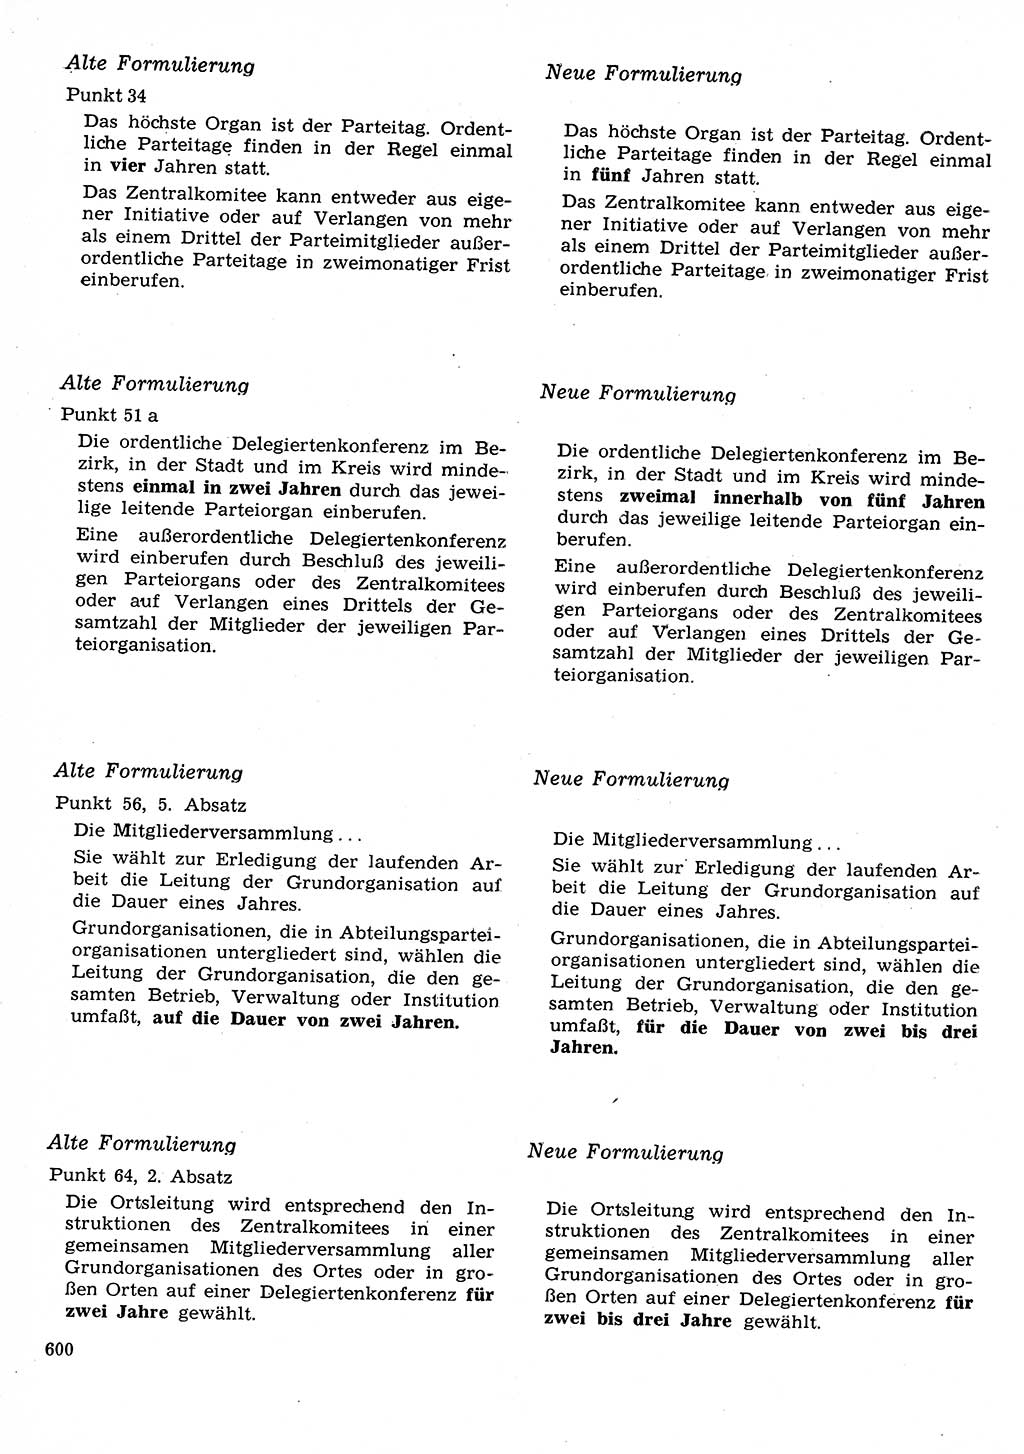 Neuer Weg (NW), Organ des Zentralkomitees (ZK) der SED (Sozialistische Einheitspartei Deutschlands) für Fragen des Parteilebens, 26. Jahrgang [Deutsche Demokratische Republik (DDR)] 1971, Seite 600 (NW ZK SED DDR 1971, S. 600)